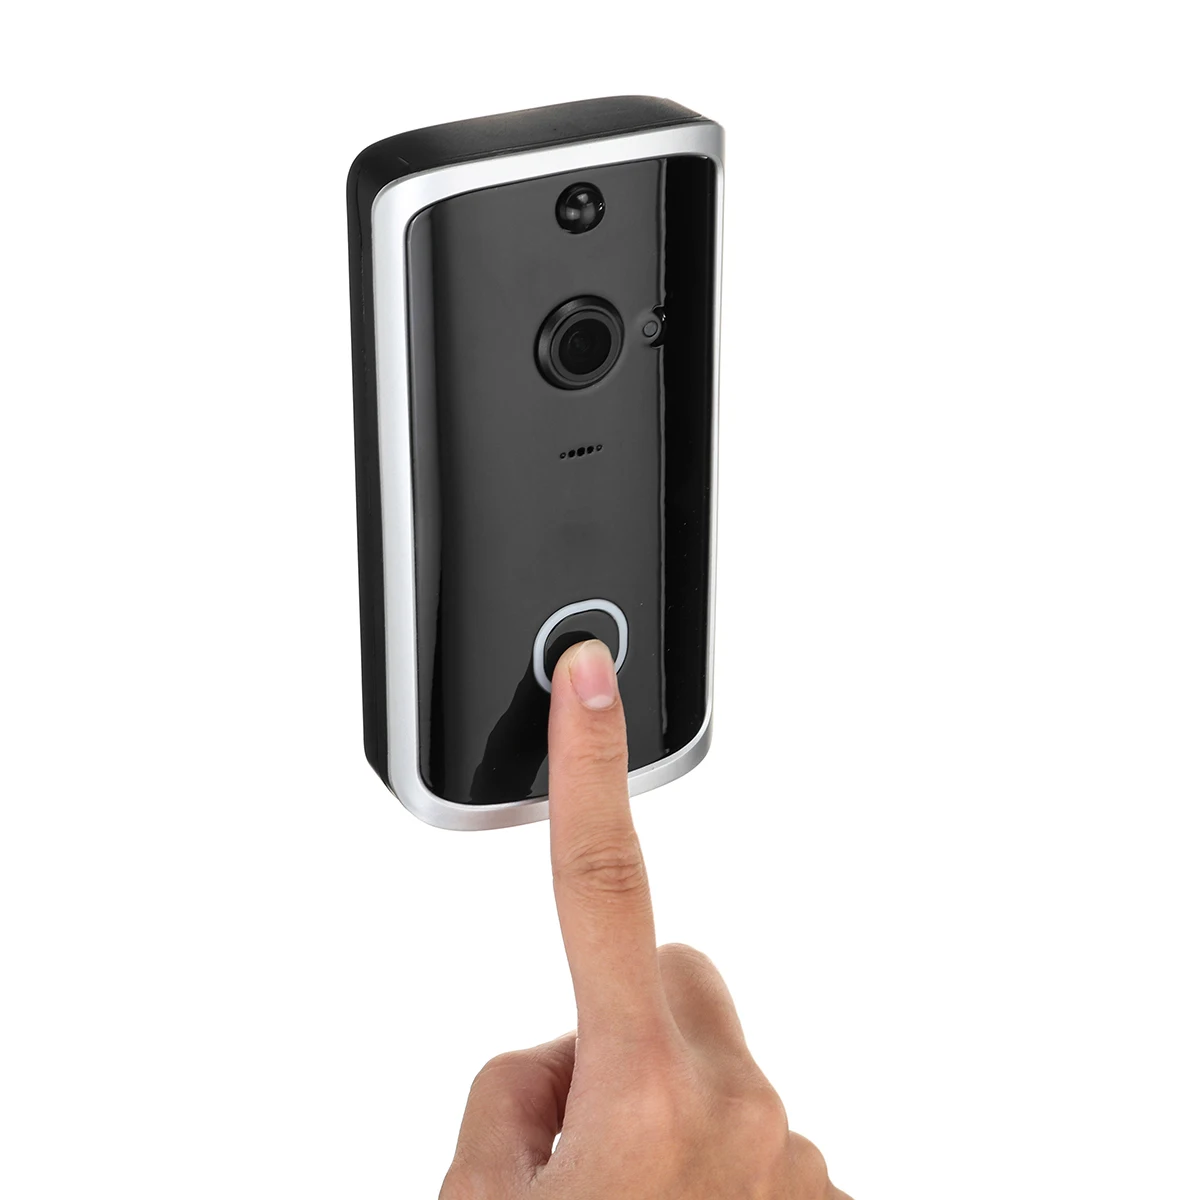 HD 720P умный wifi дверной звонок беспроводной домофон дверной звонок с камерой Обнаружение движения ночное видение видео Водонепроницаемый дверной звонок M12